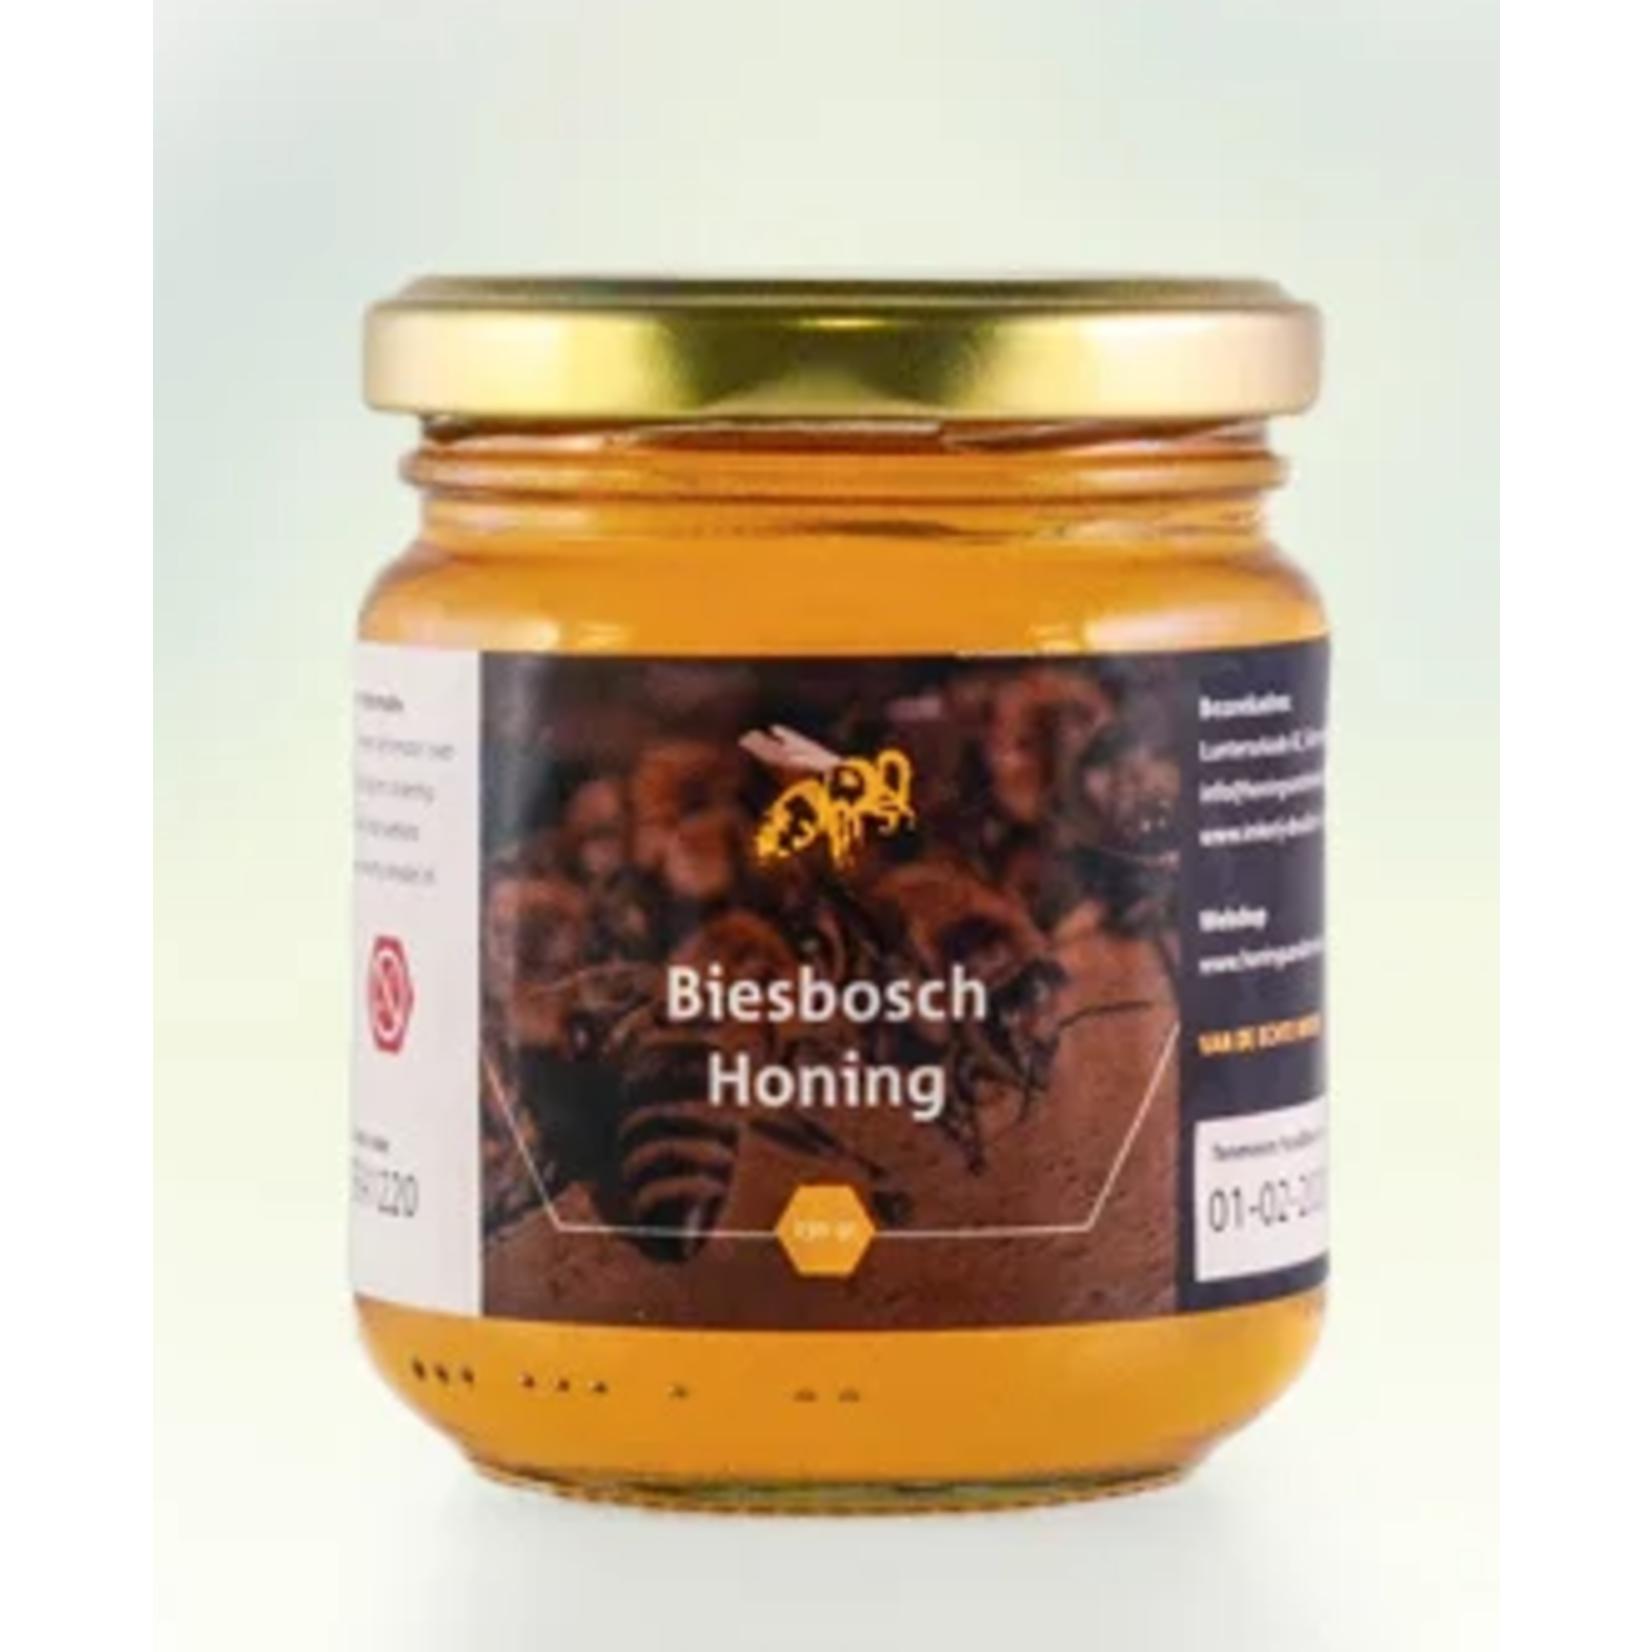 Balsemien (biesbosch) Honing - Imkerij de Vallei